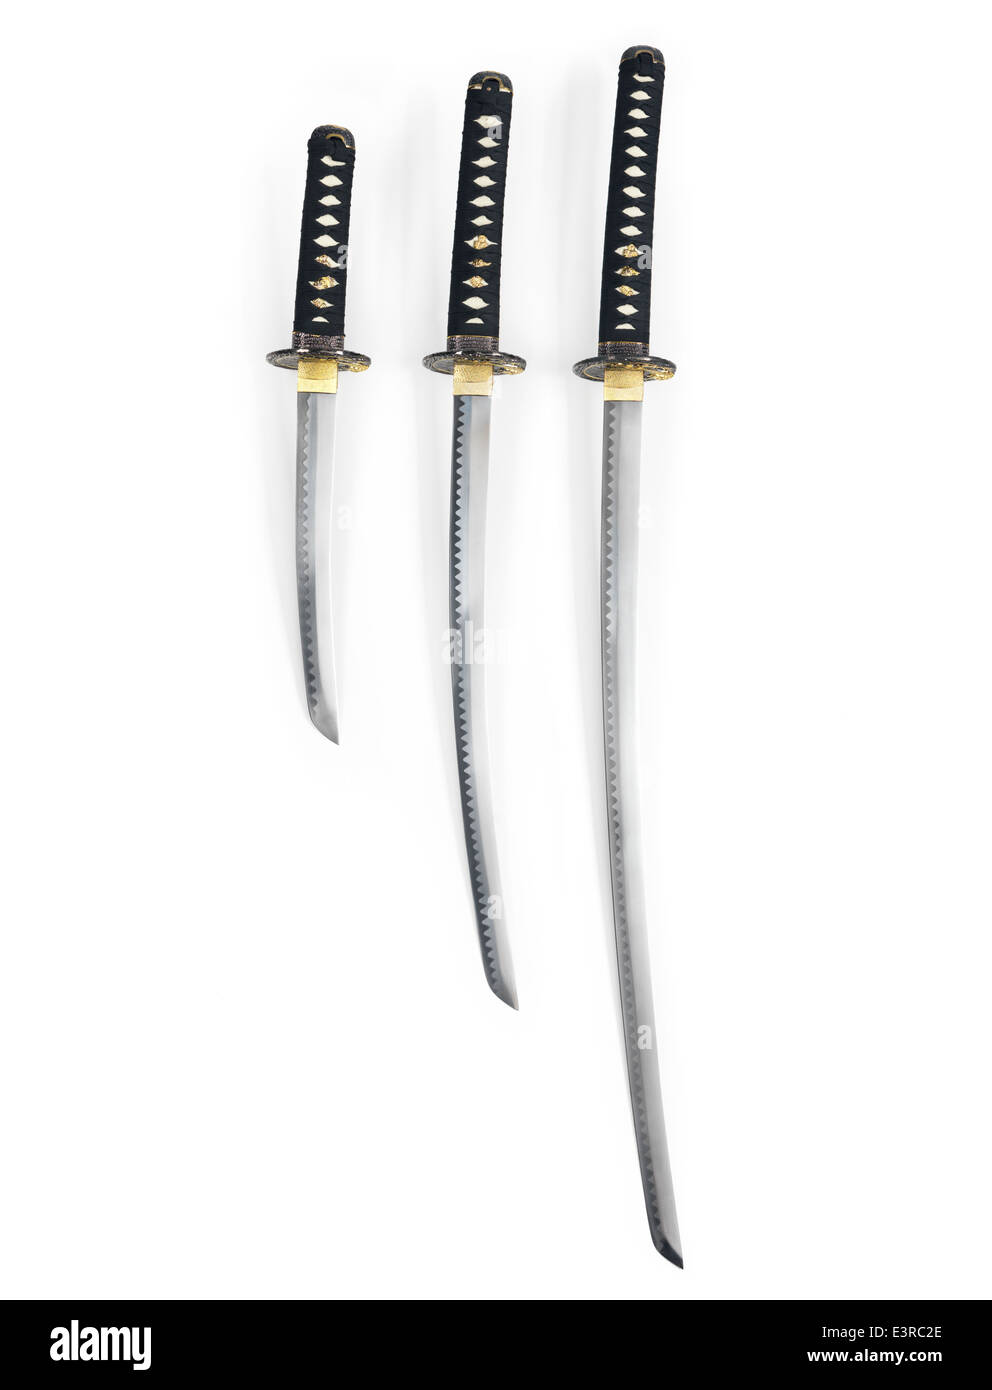 Representación 3d de la espada samurai katana desde diferentes ángulos de  perspectiva